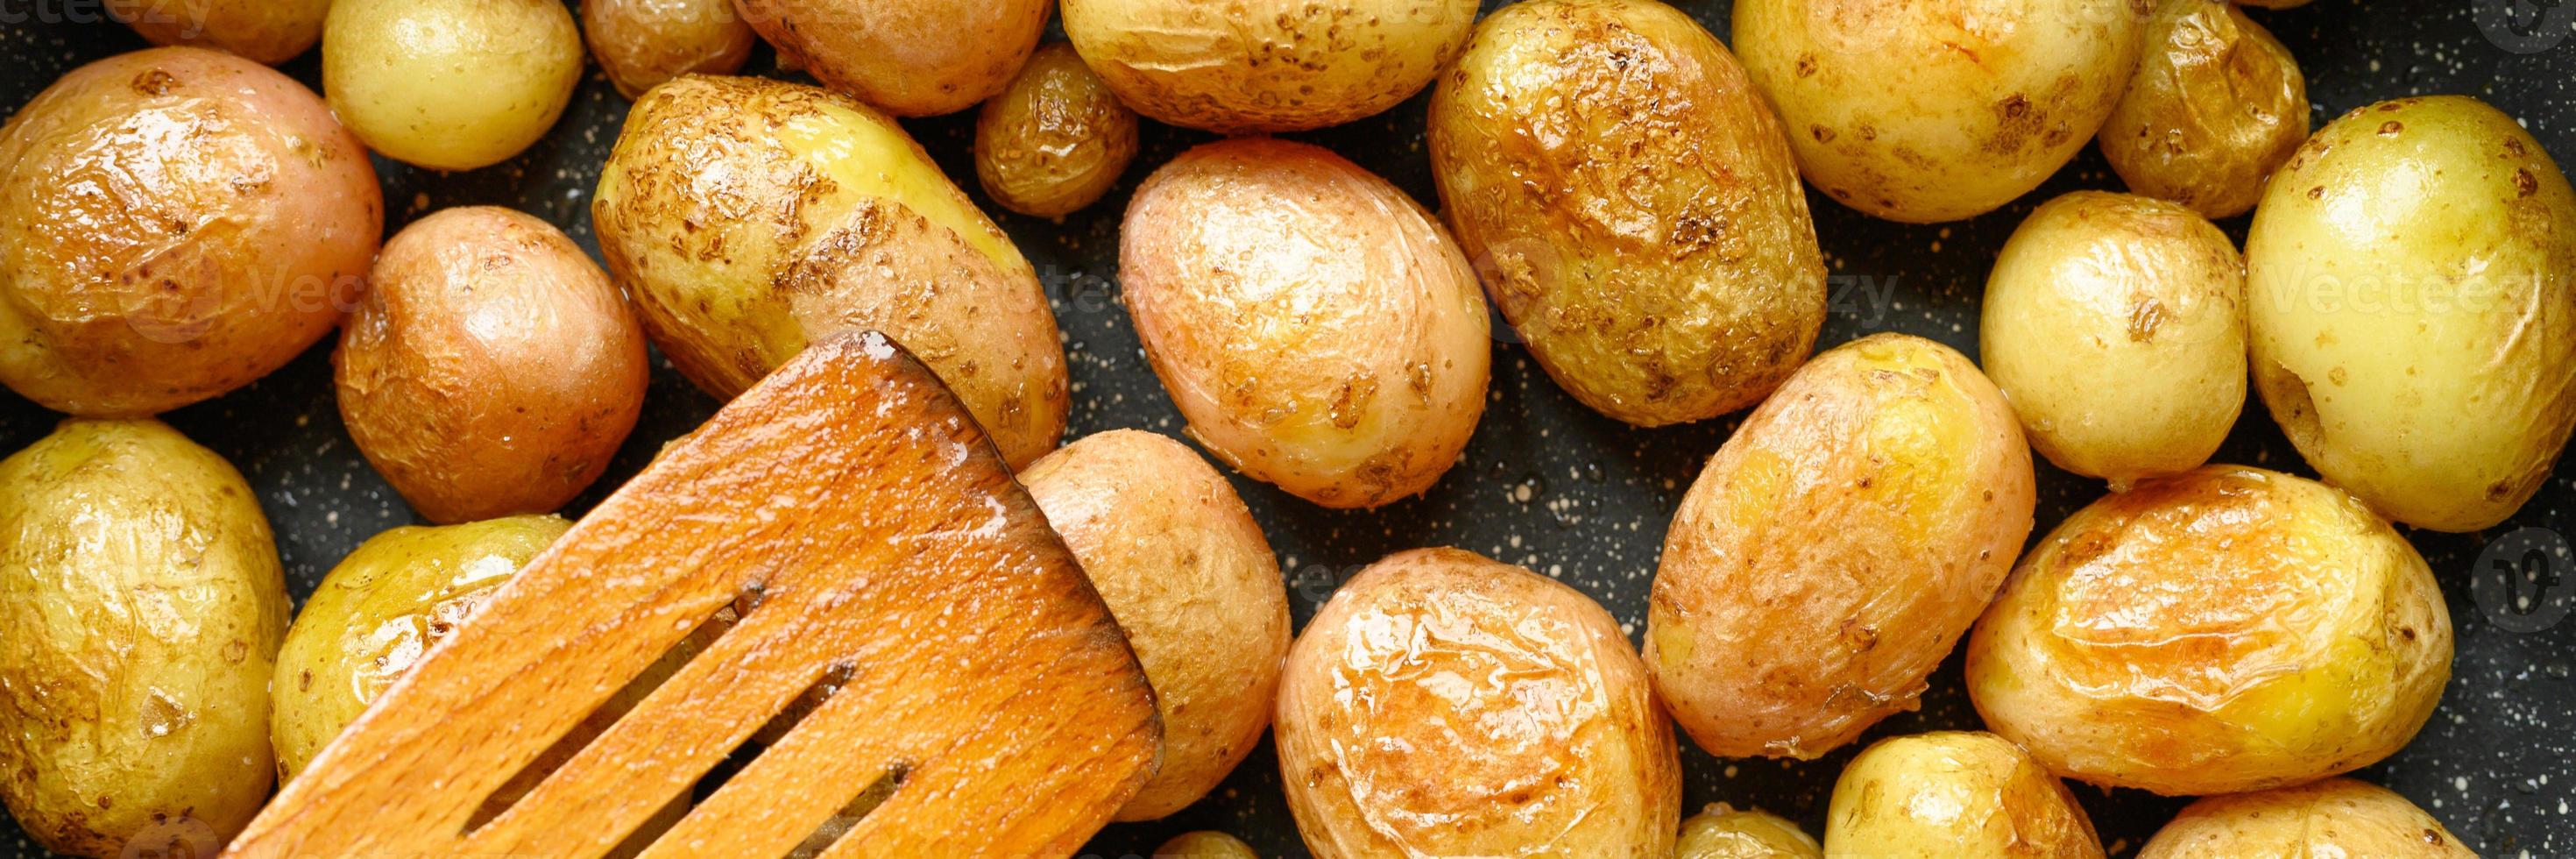 patatas asadas doradas con piel foto